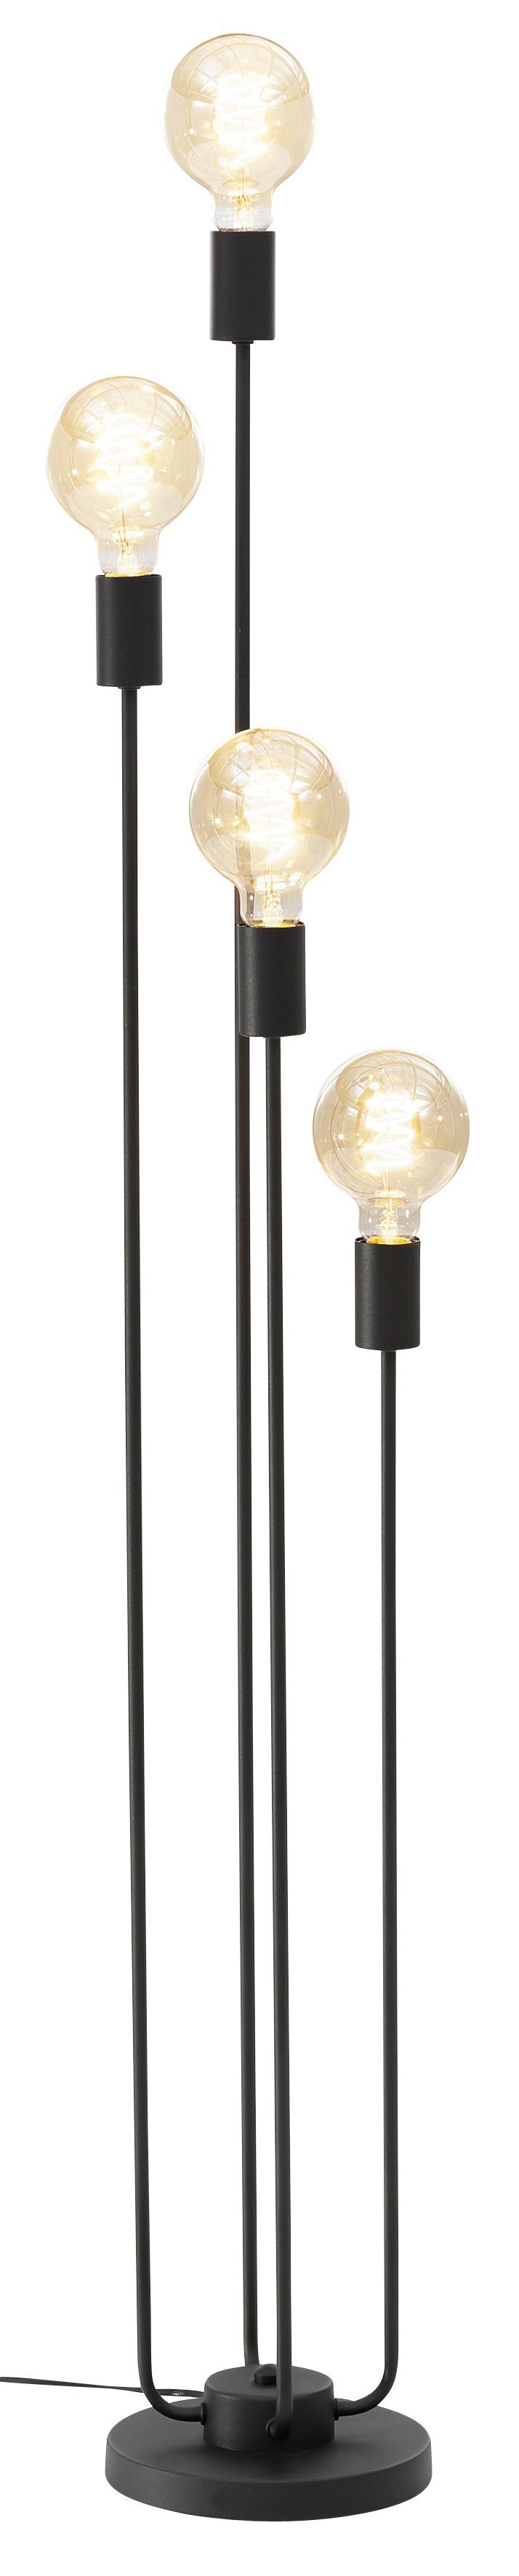 Leonique Stehlampe Jarla, ohne Höhe goldfarbenen/schwarzen Fassungen, Stehleuchte Leuchtmittel, 137 cm mit